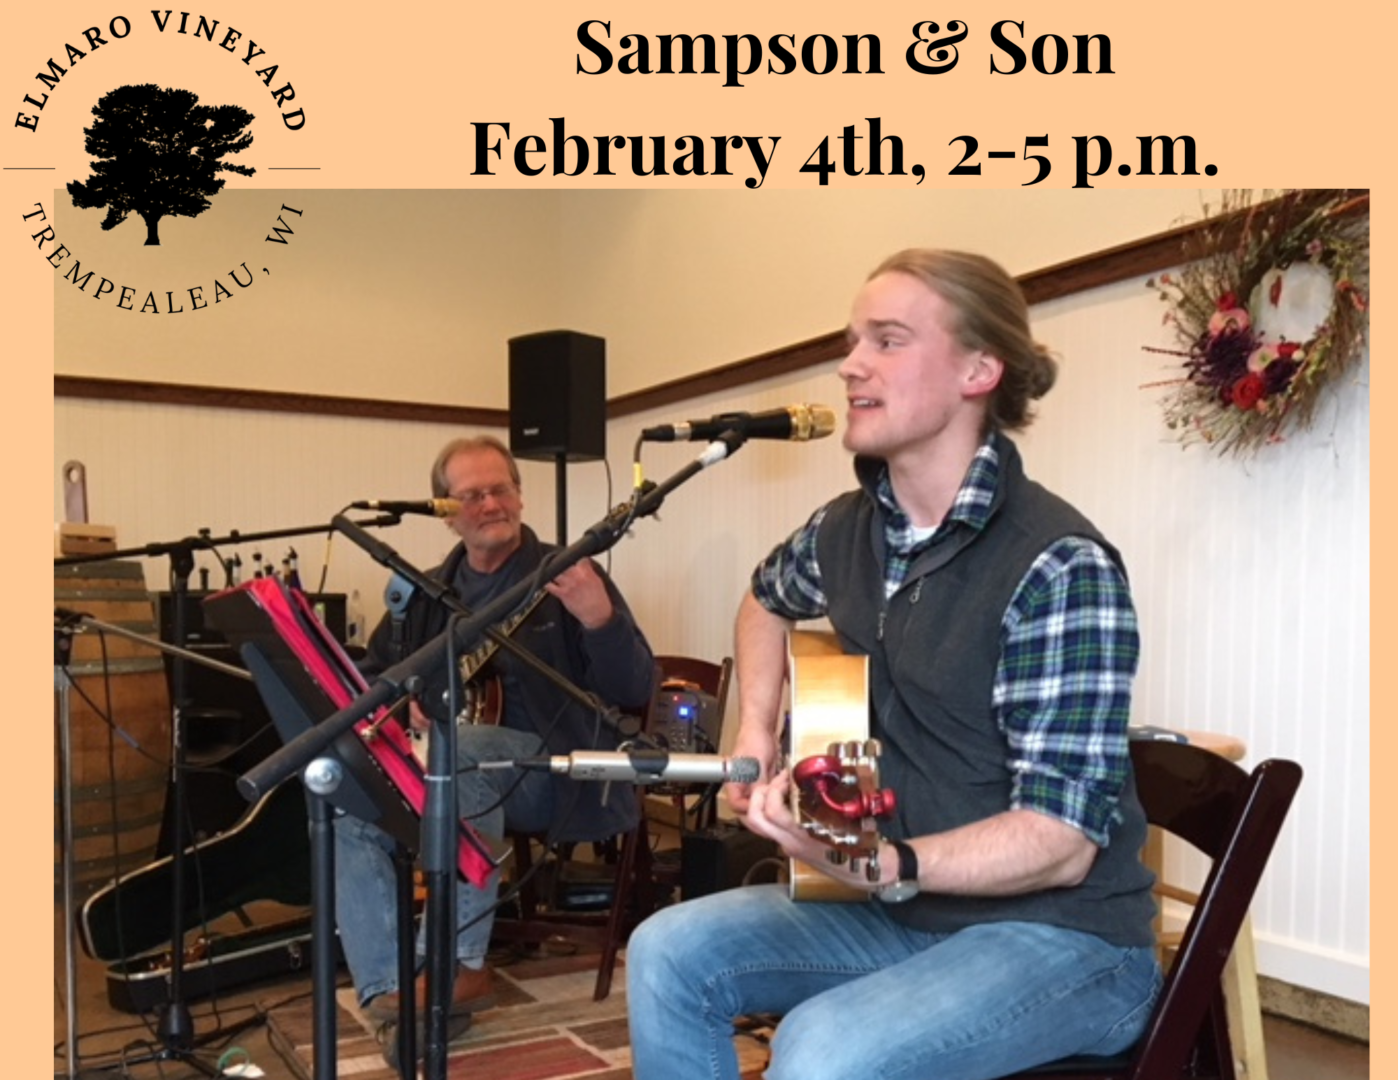 Sampson & Son February 4th, 2-5 p.m.